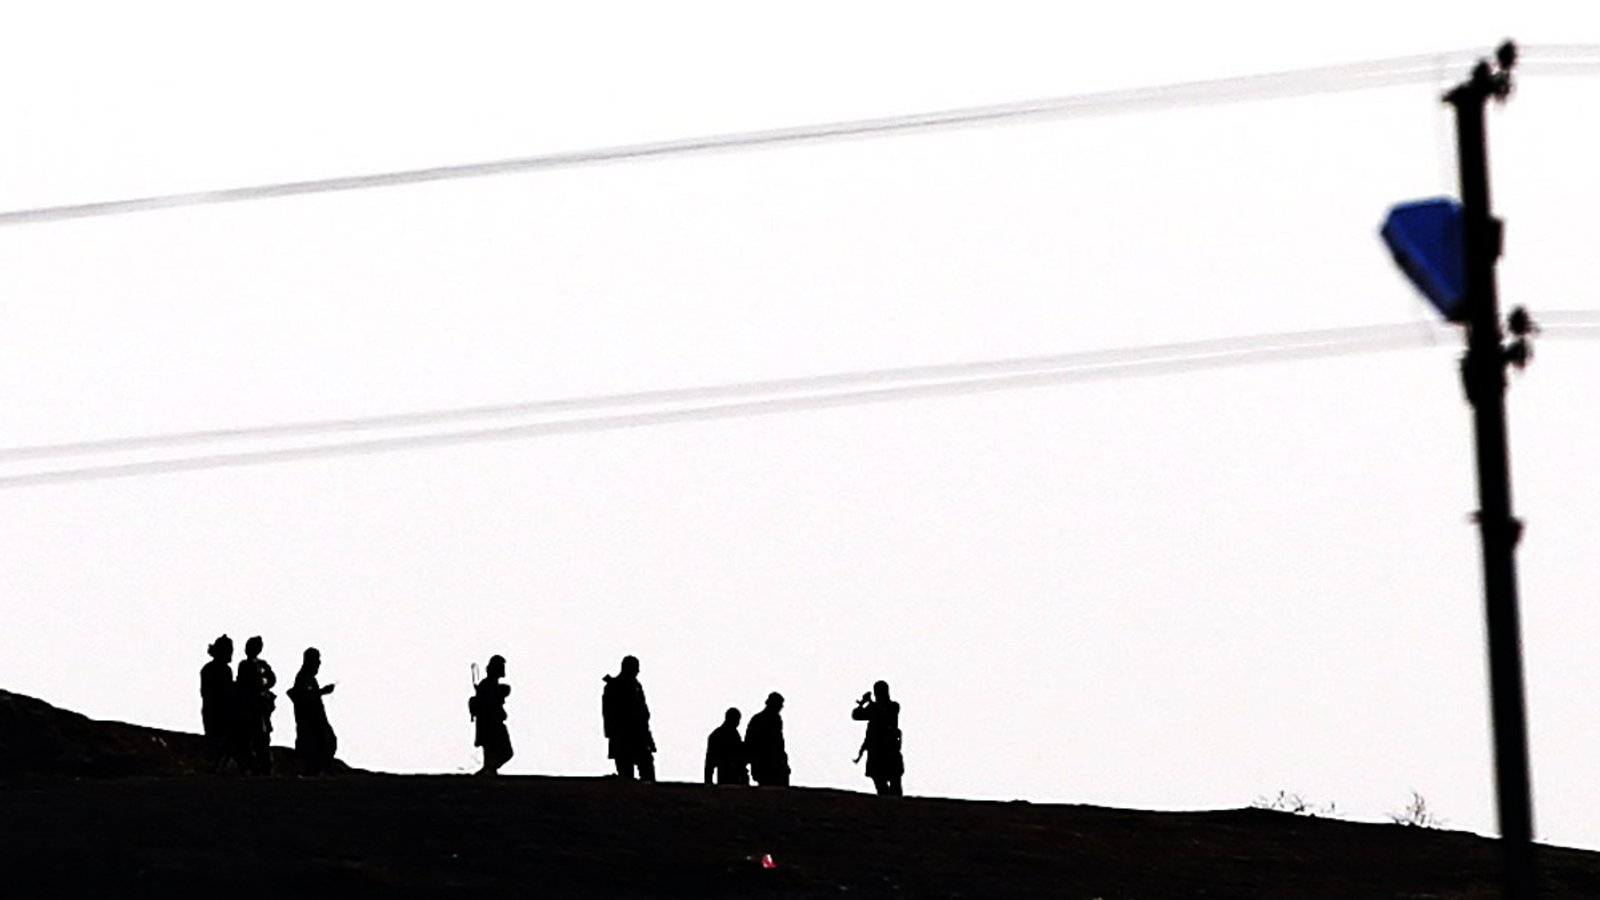 Kämpfer des Islamischen Staates auf einer Anhöhe gehend im Gegenlicht fotografiert (Symbolbild).